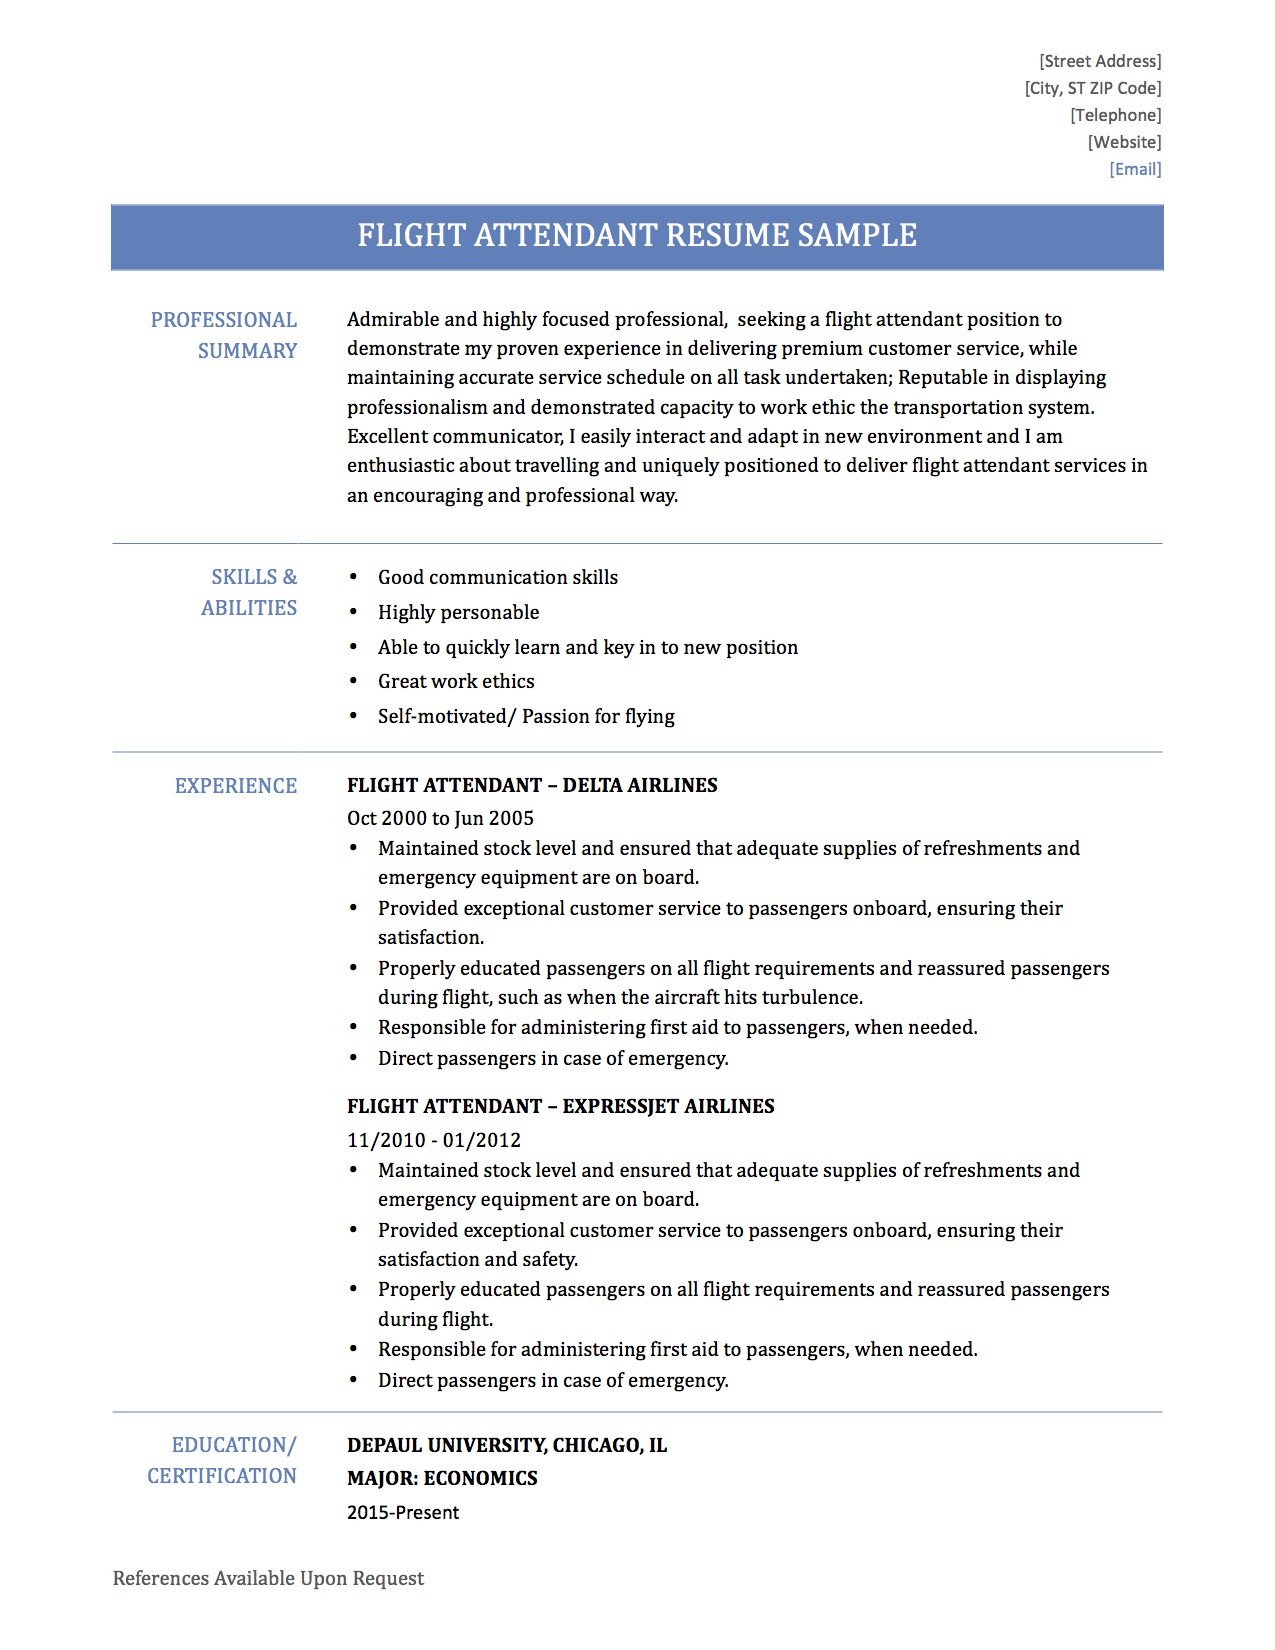 Flight attendant Resume Sample Sample Resume for Flight attendant Position Resume Ideas